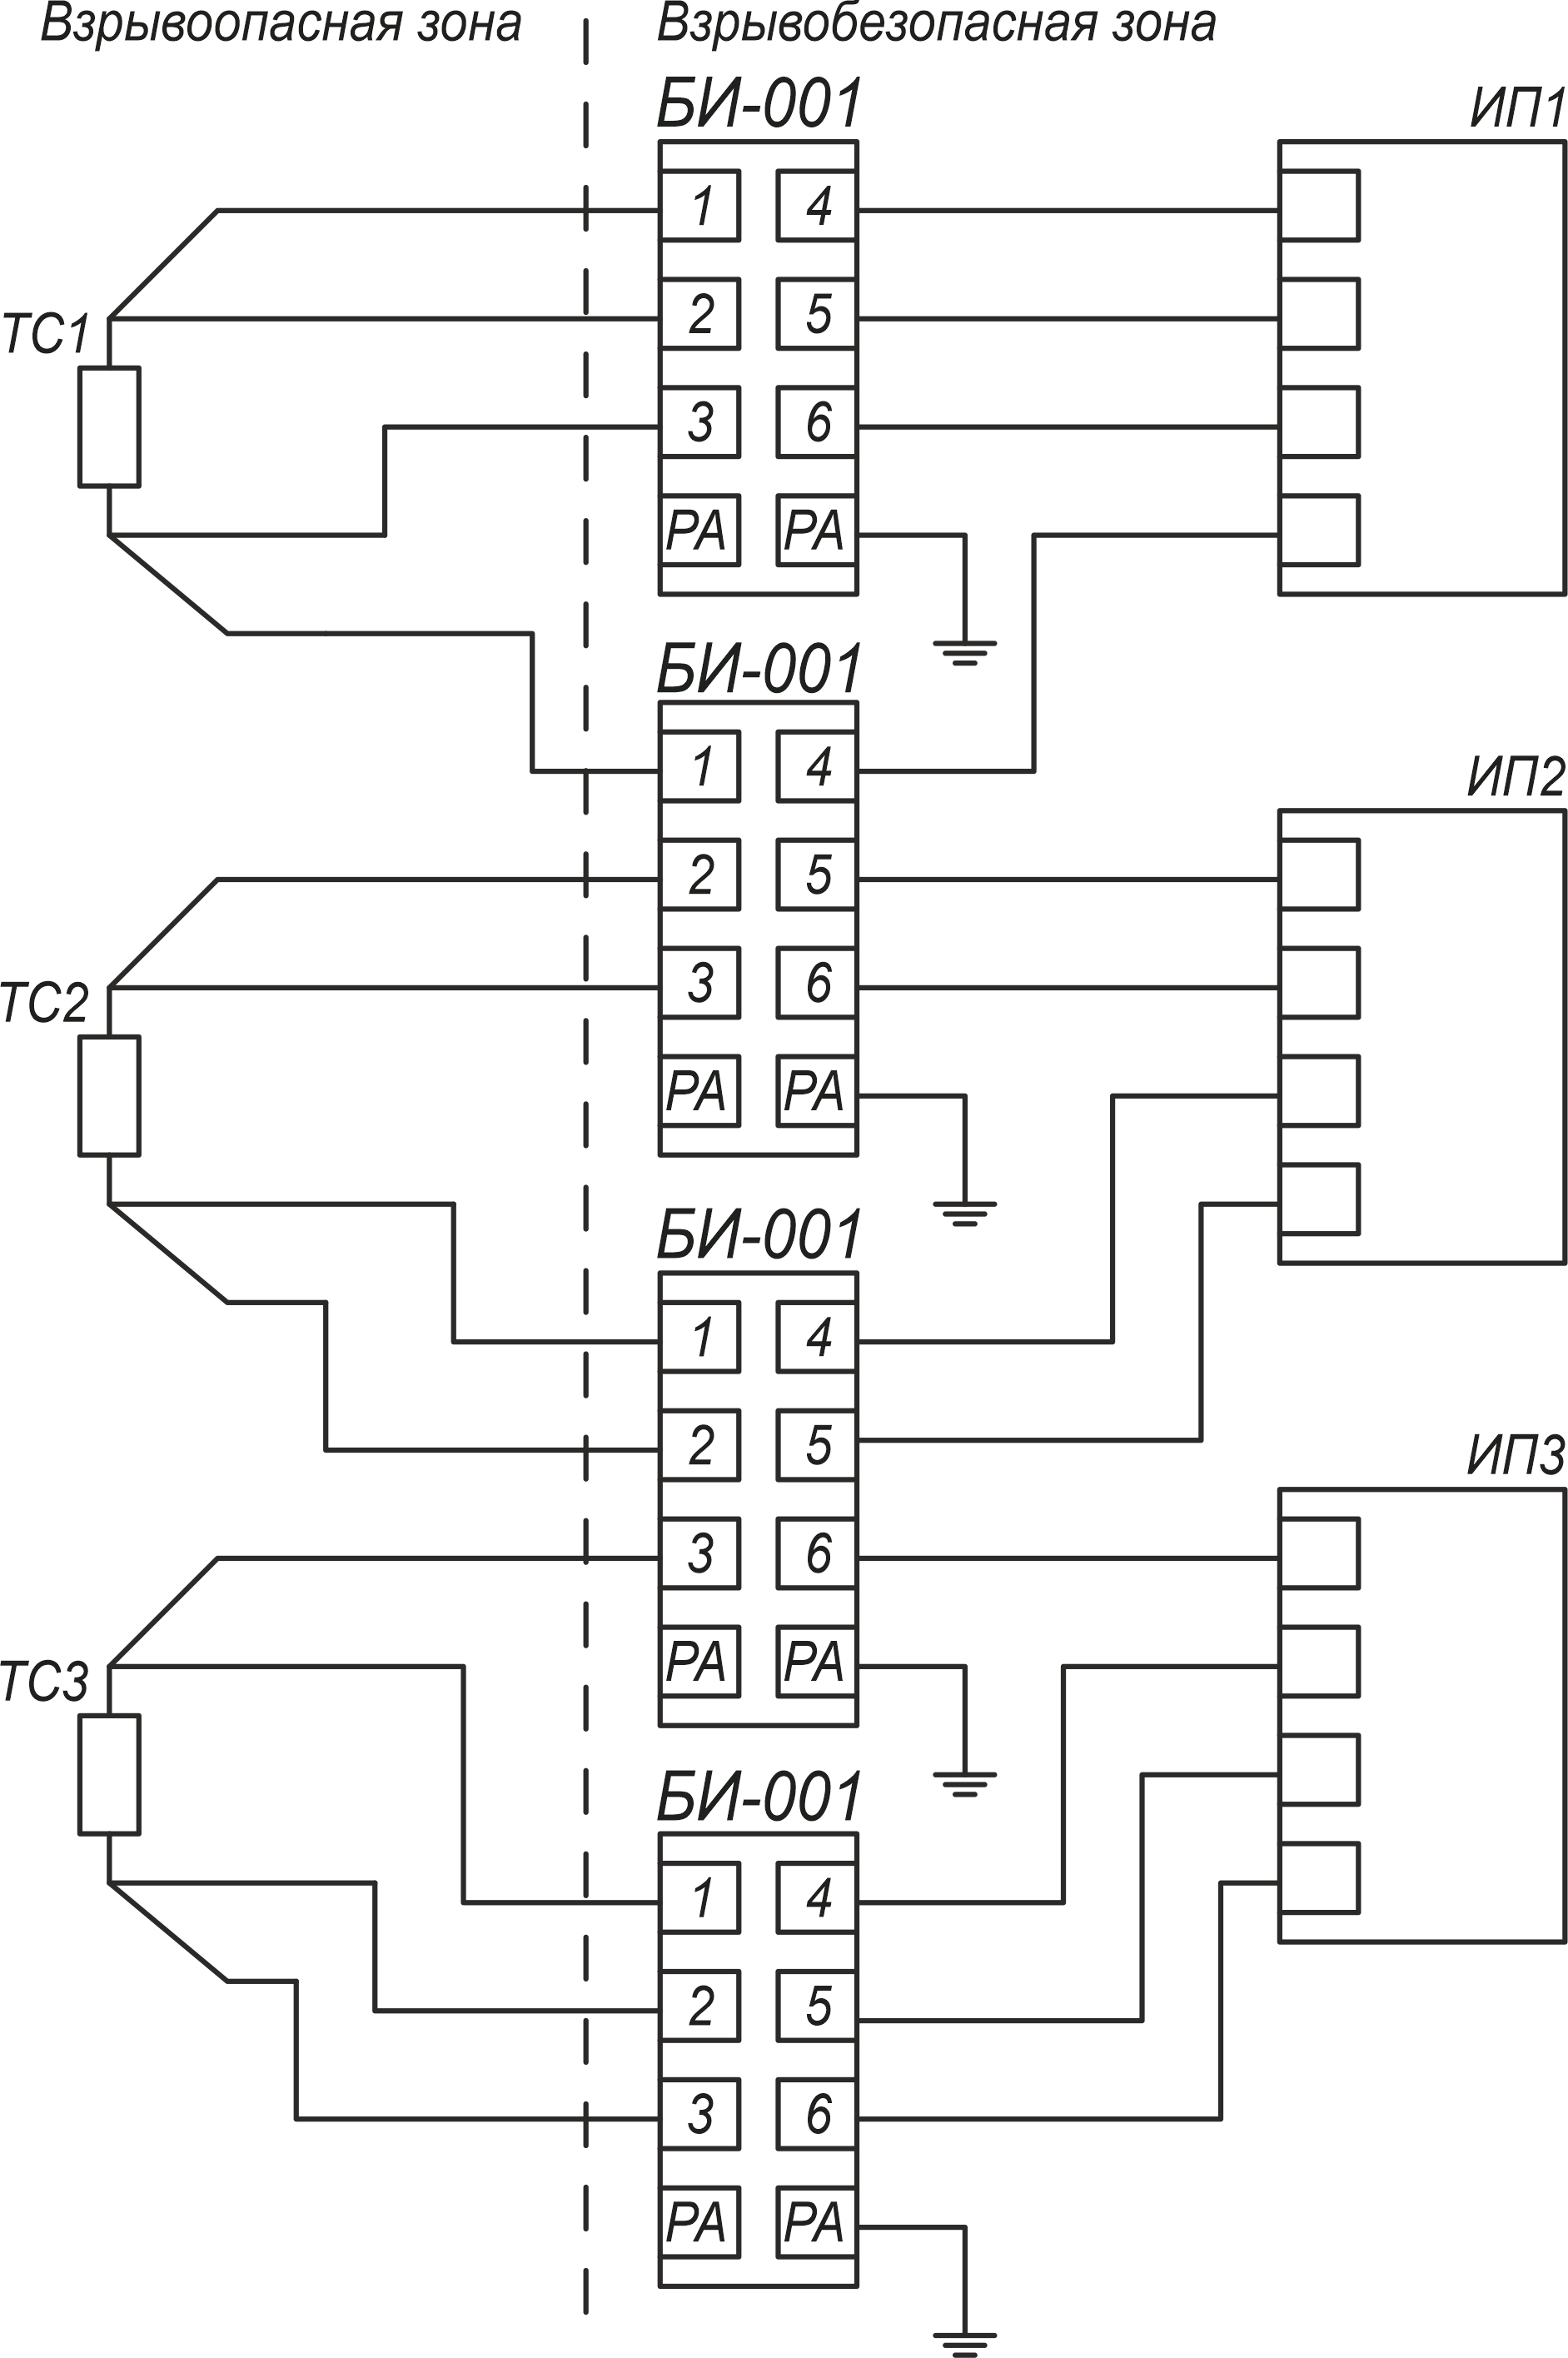 БИ-001 Четырехпроводная схема подключения ТС